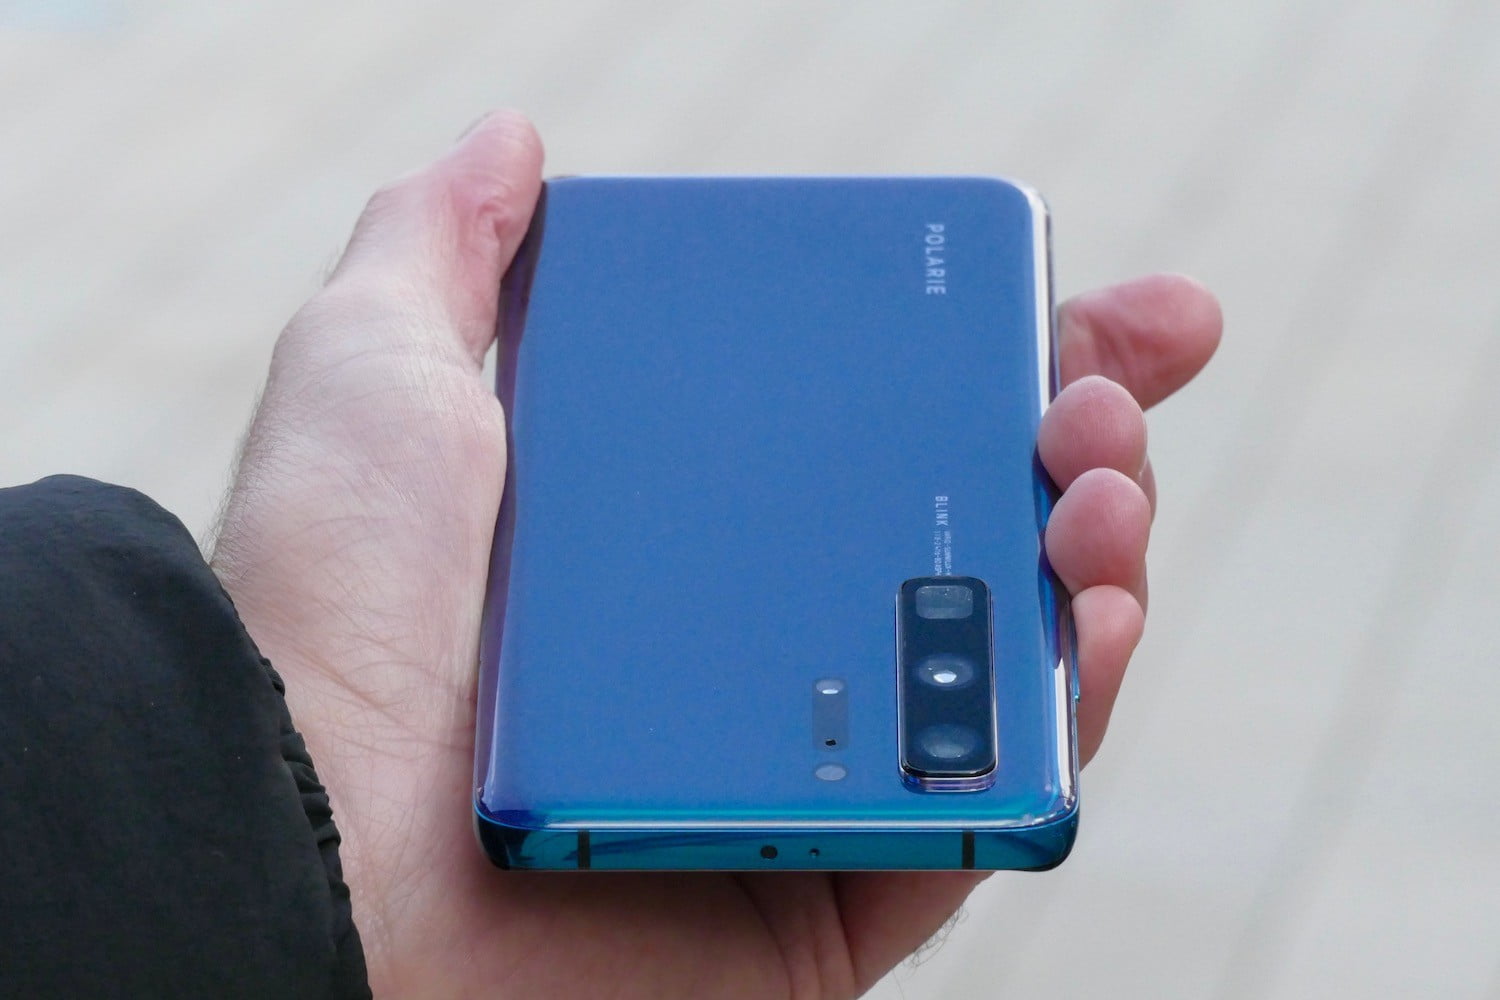 Lộ video trên tay
Huawei P40 trước thời điểm ra mắt 26 tháng 3